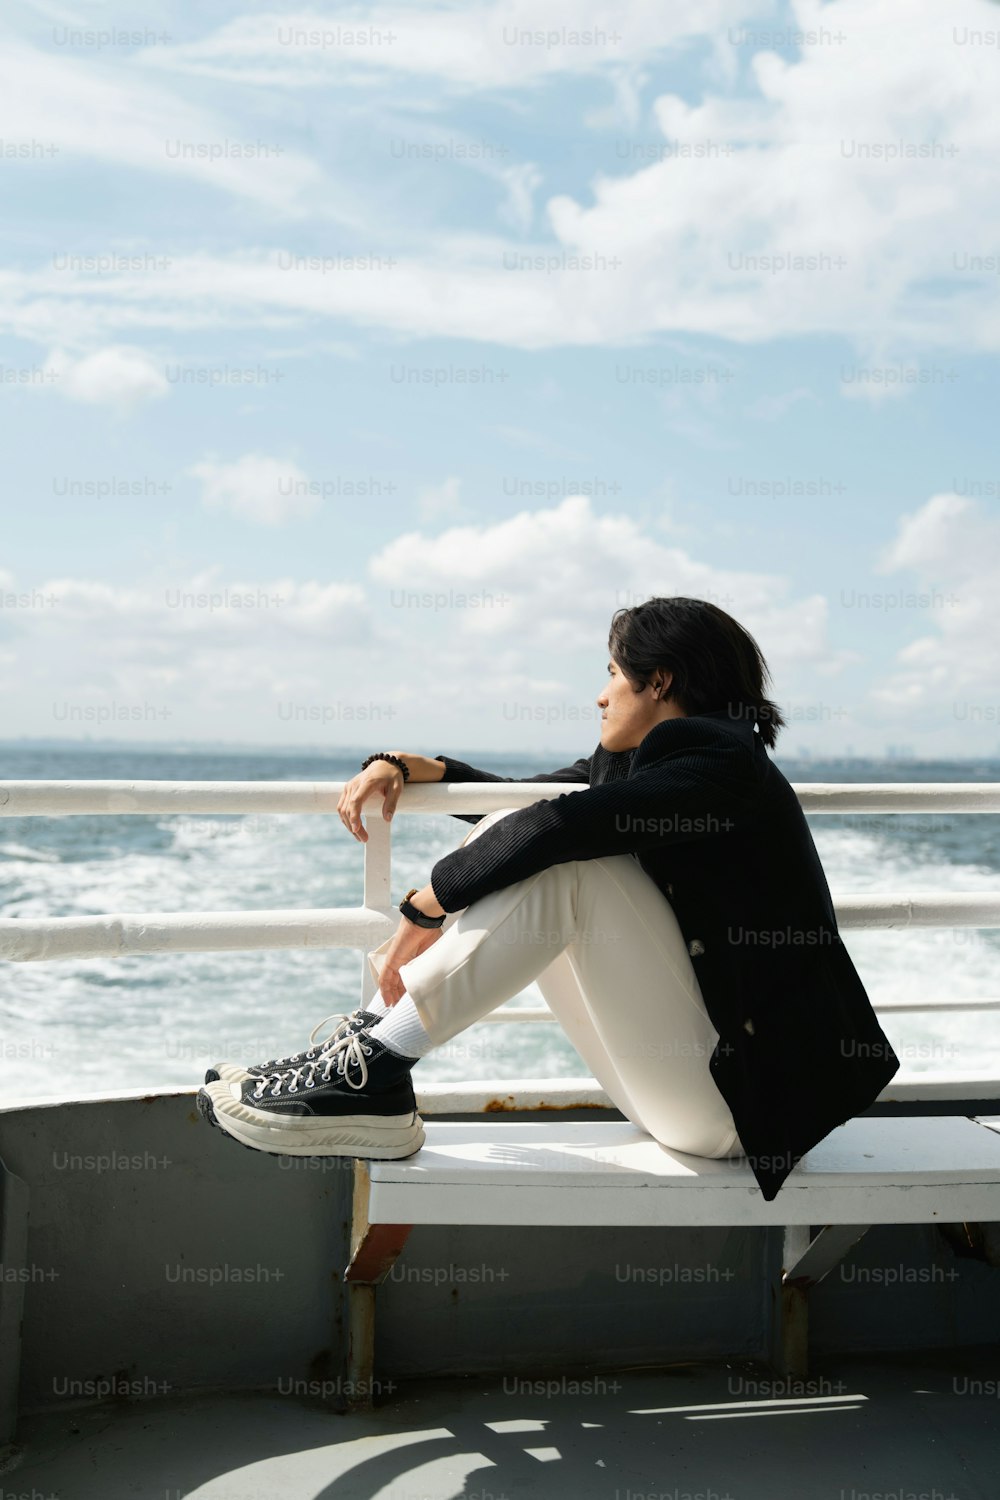 Una persona sentada en un banco cerca del océano